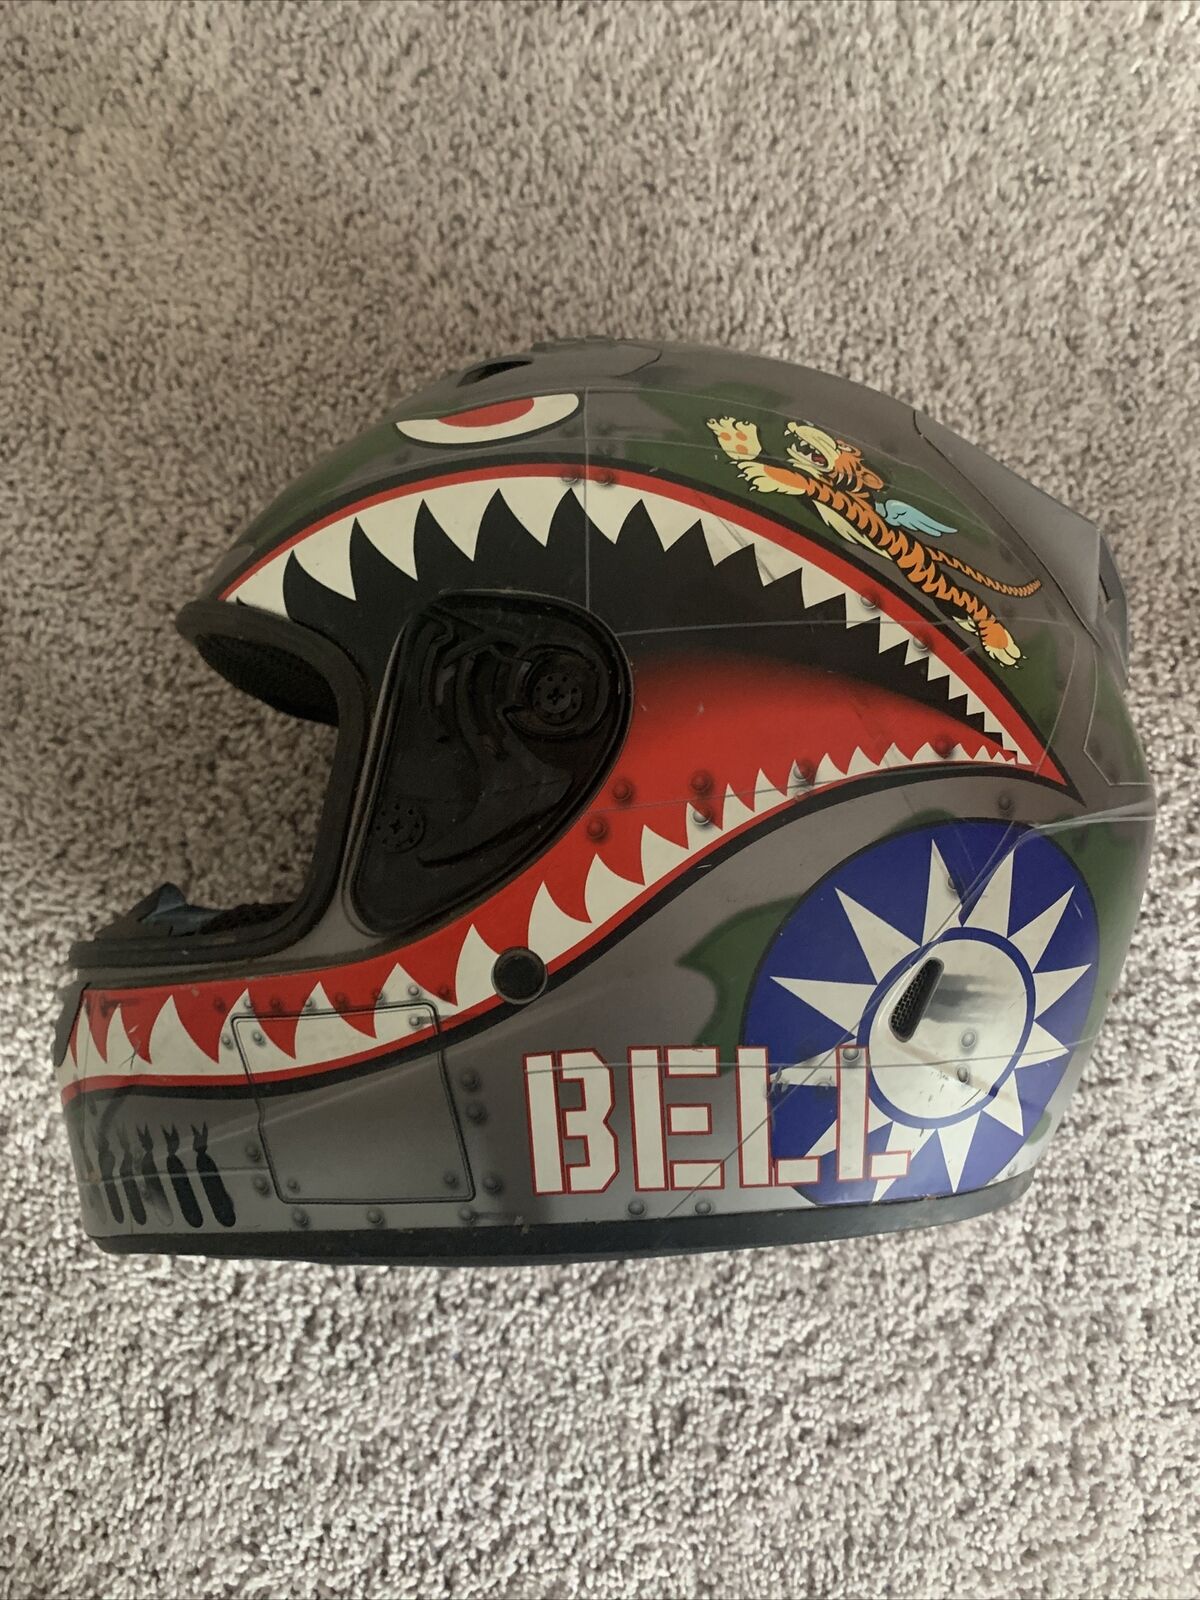 Bell Vortex Flying Tiger Motorcycle Helmet Size 14 / Large (NO VISOR)